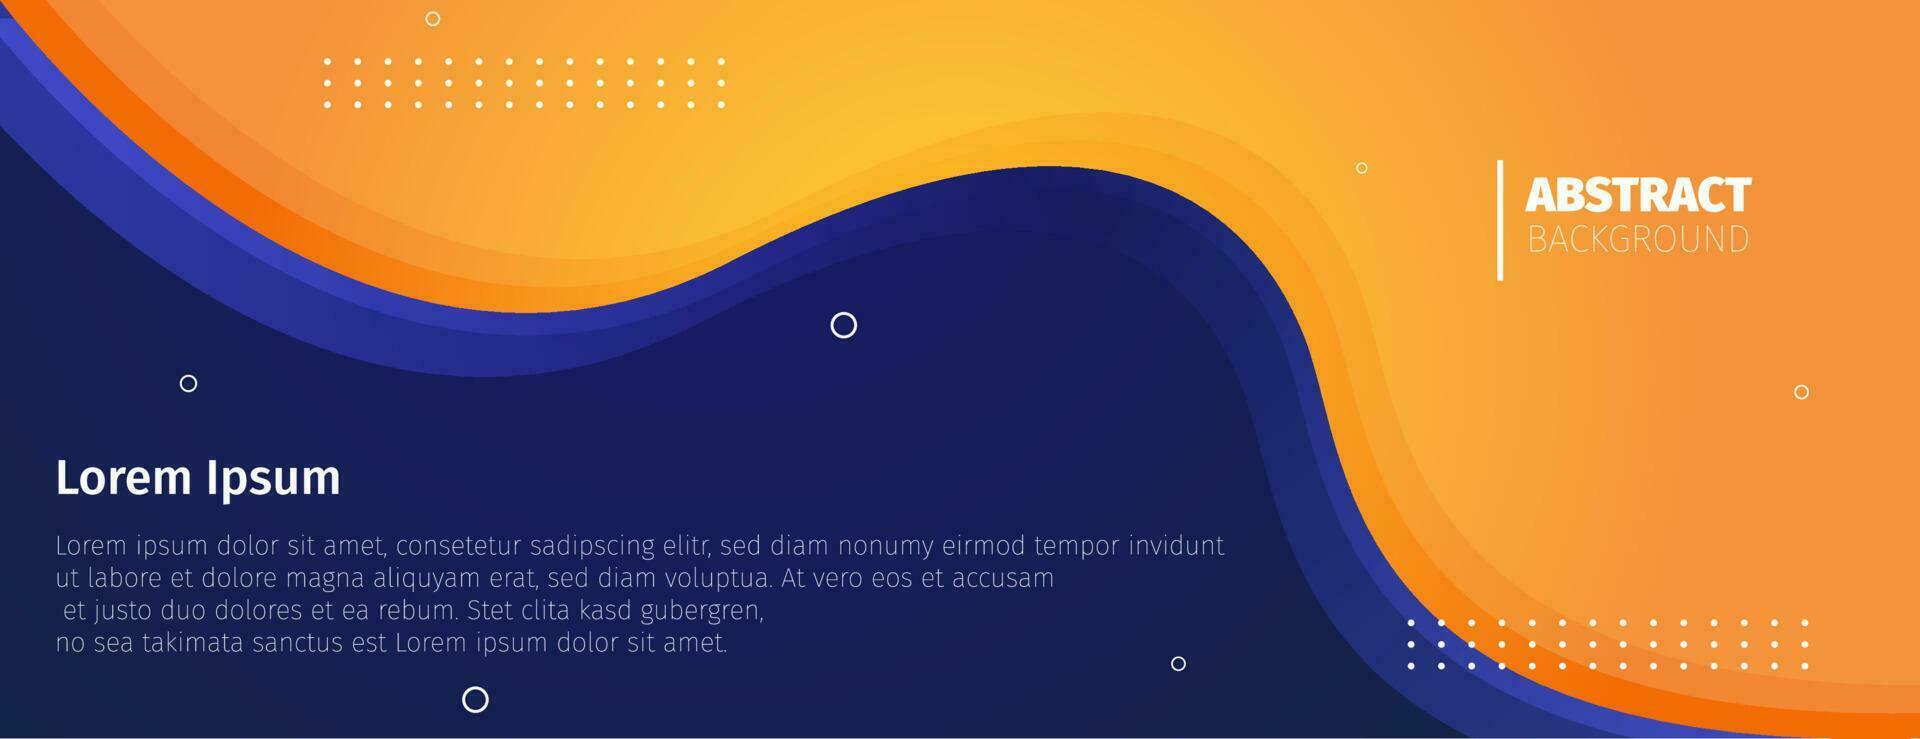 fundo abstrato com formas de onda laranja. Banner design background.vector ilustração vetor